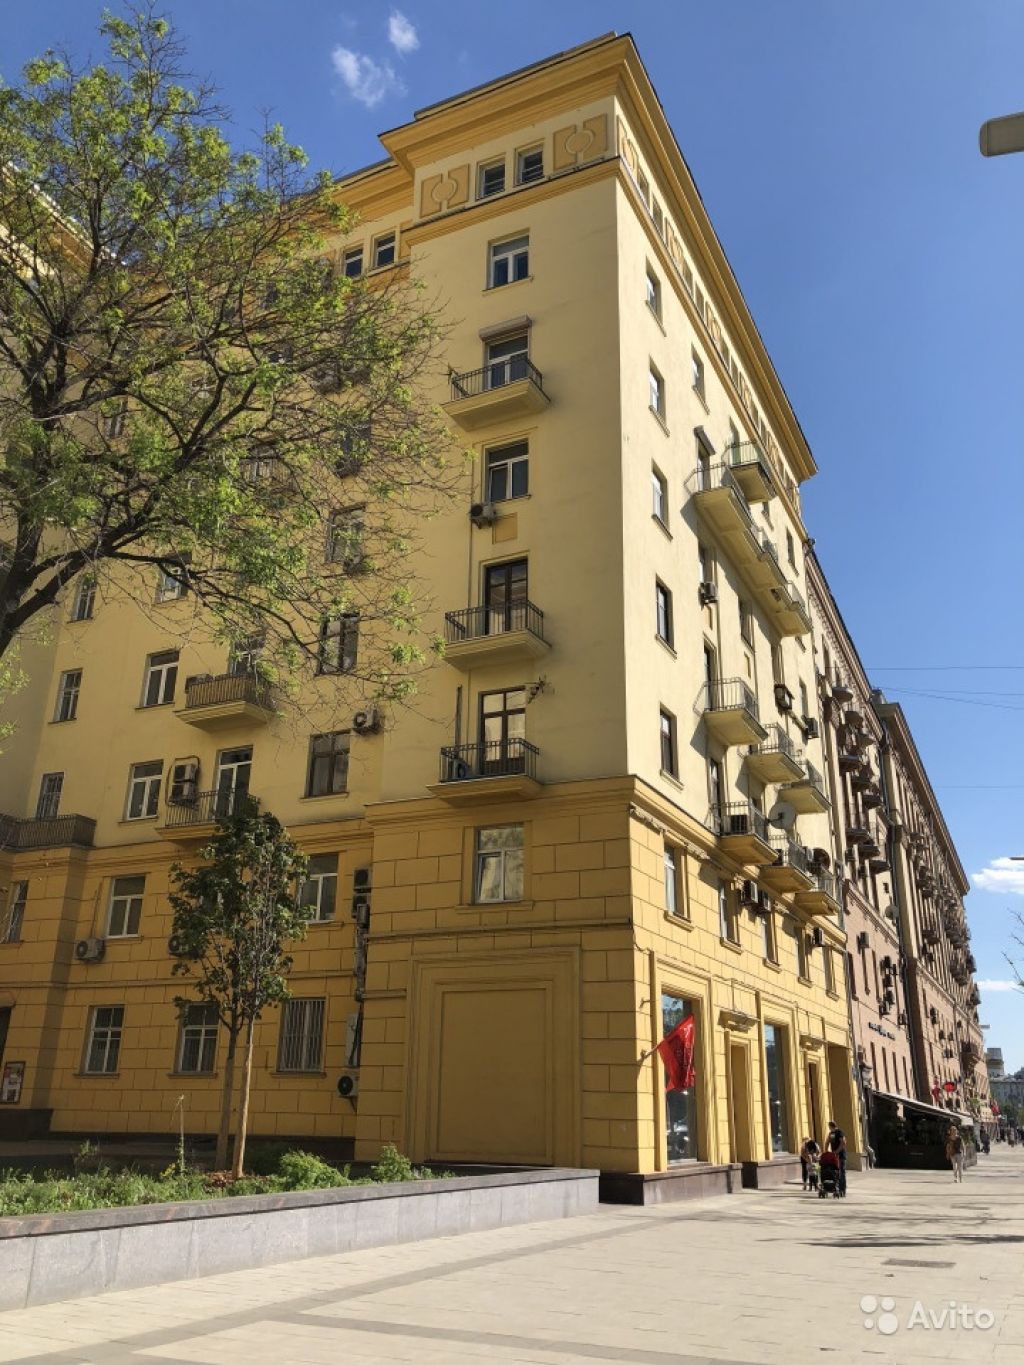 Продам квартиру 5-к квартира 141 м² на 8 этаже 8-этажного кирпичного дома в Москве. Фото 1